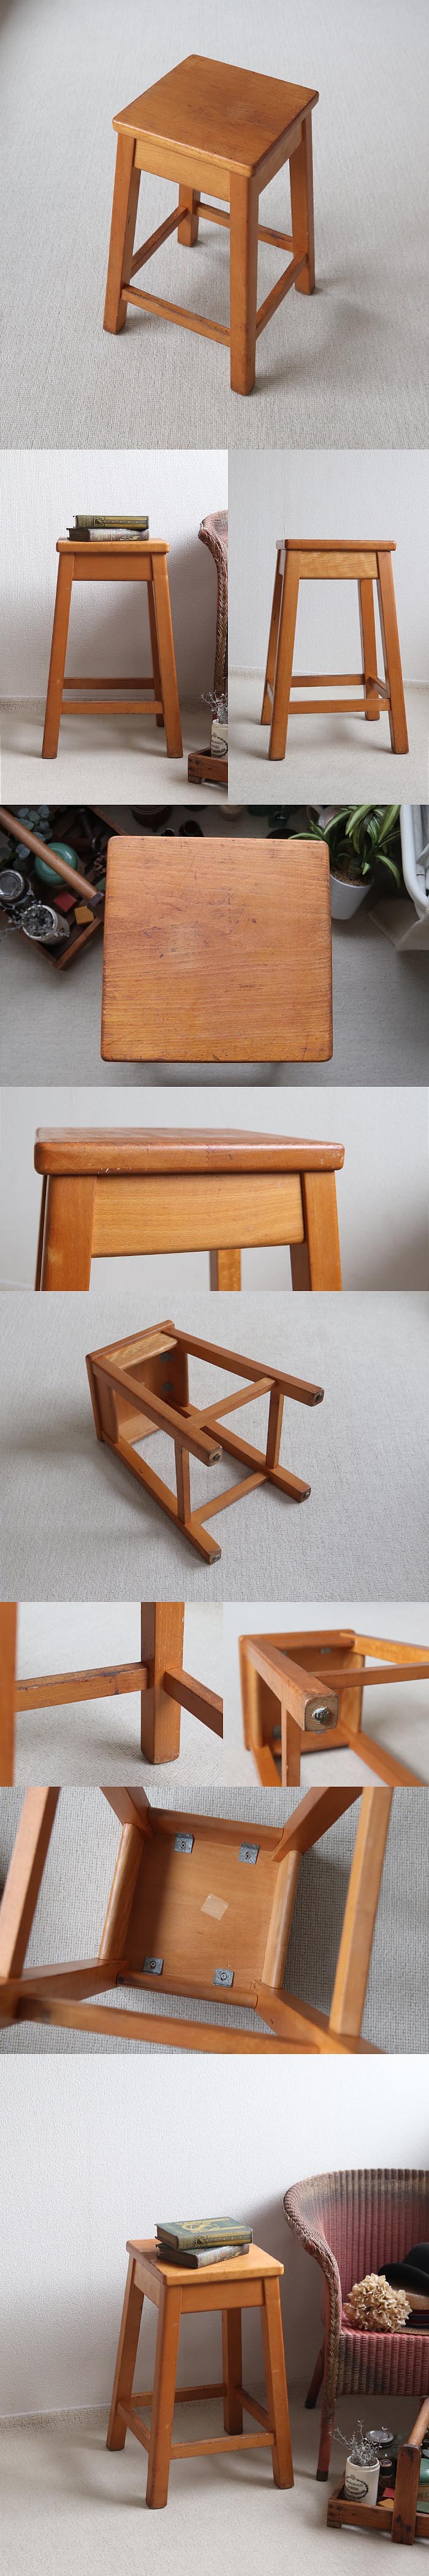 イギリス ヴィンテージ ウッドスツール 木製椅子 カントリー アトリエ 花台 家具「飾り台にも」T-816